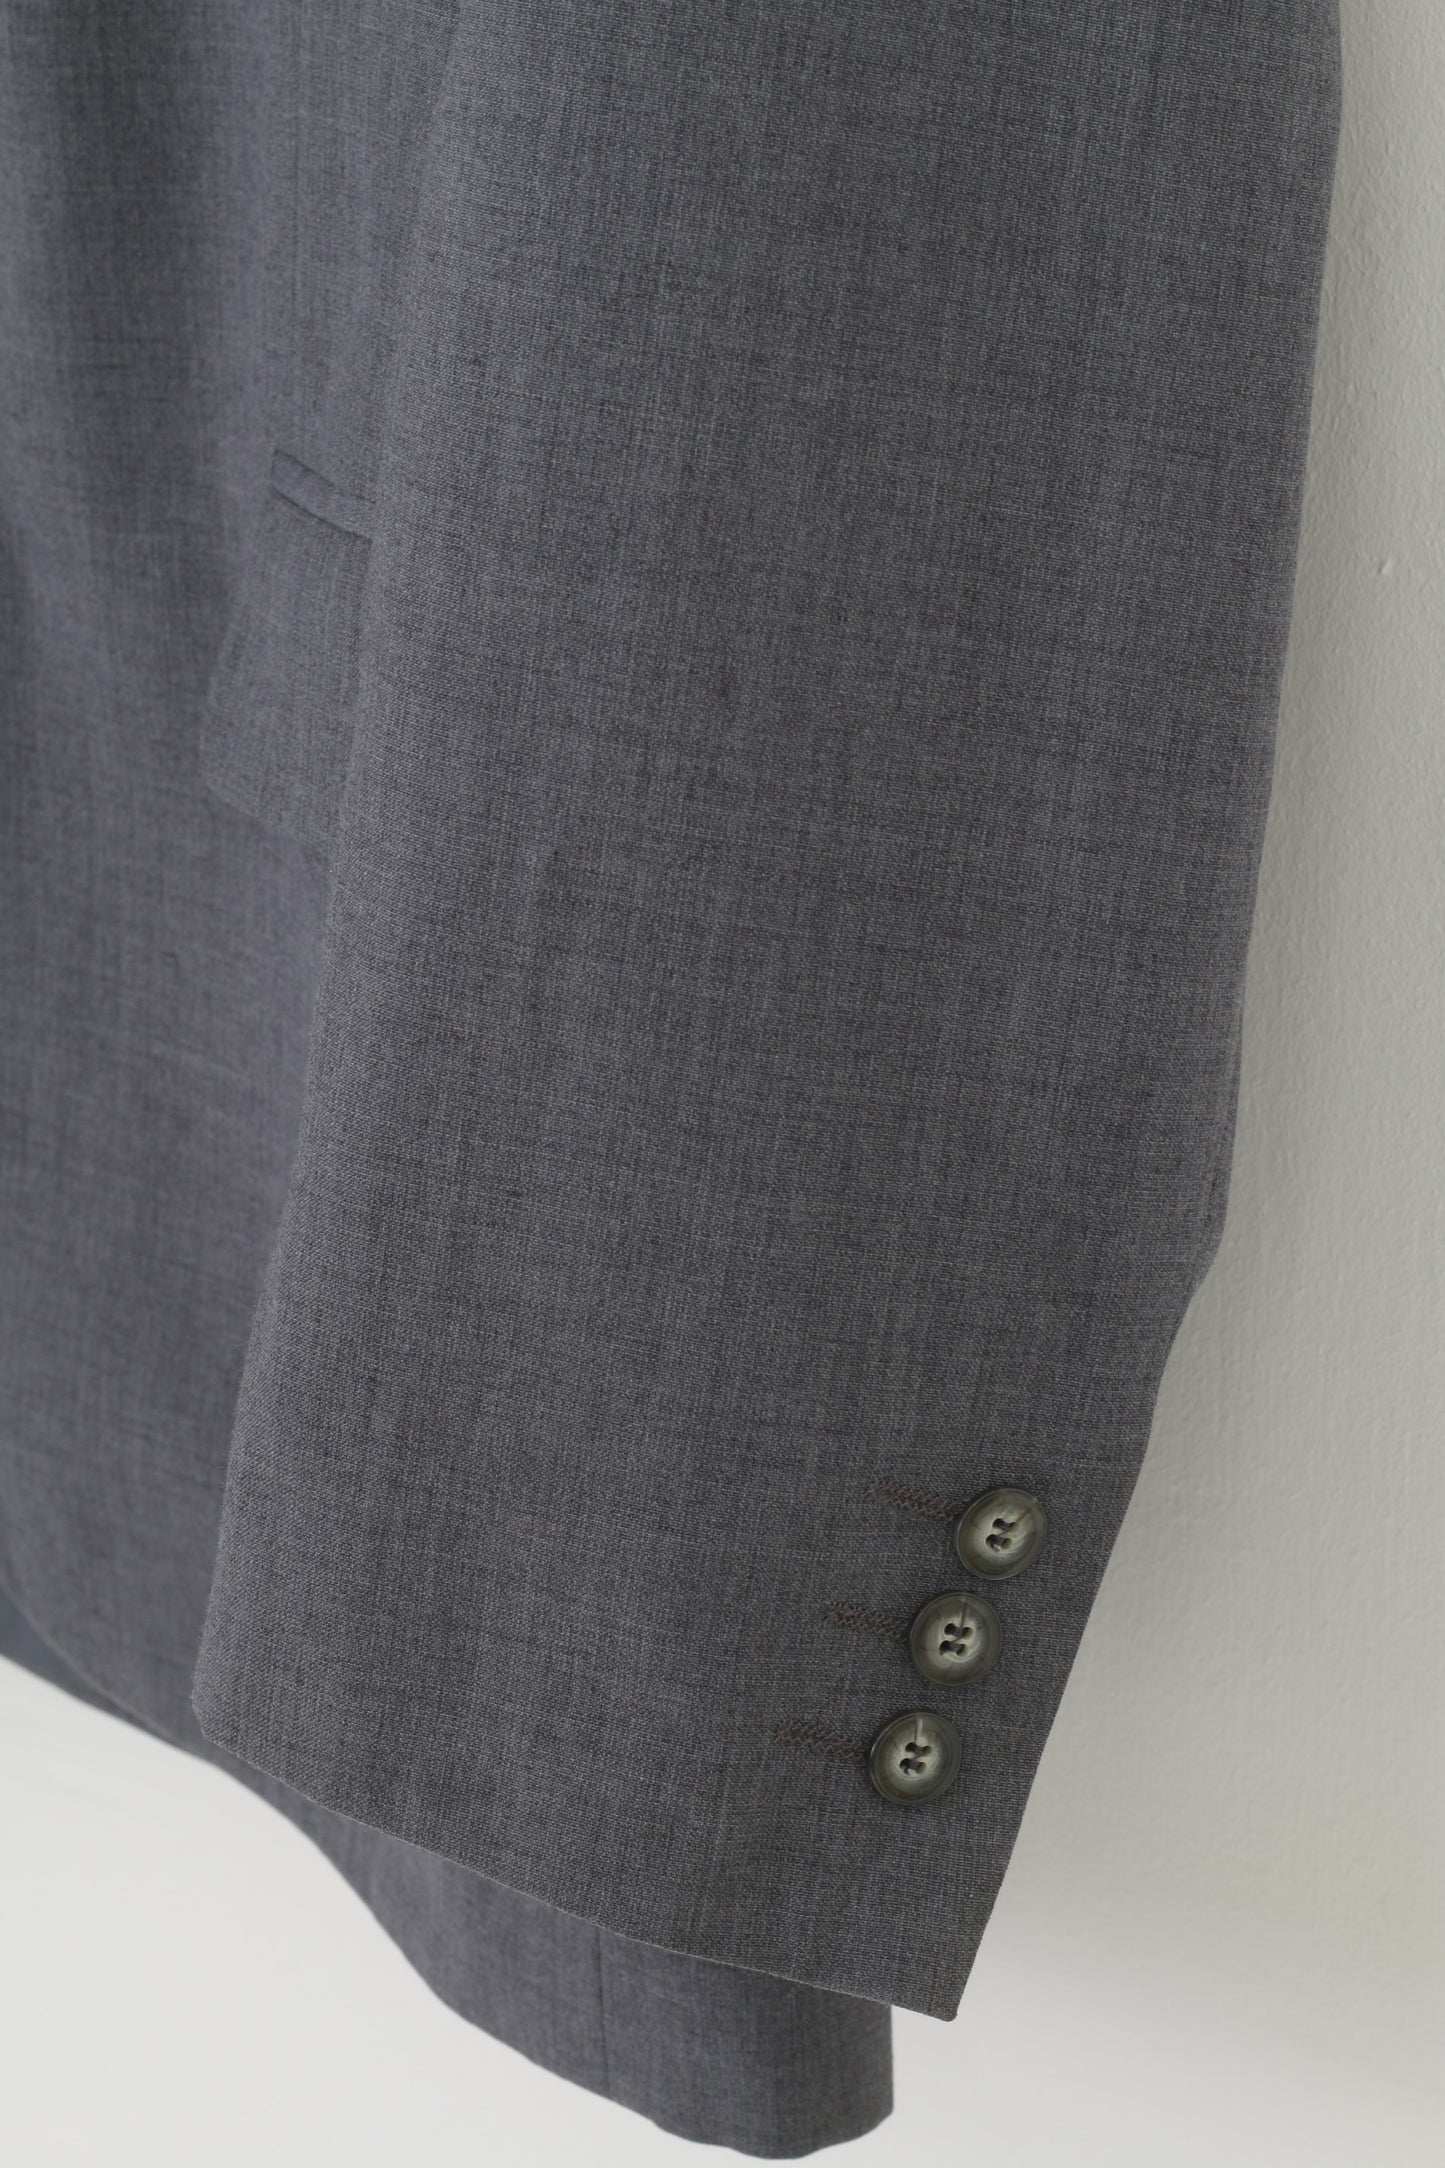 Coxmoore Men 42 Blazer Grey Wool Breasted Bottoms Long Sleeve Elegant Vintage Top